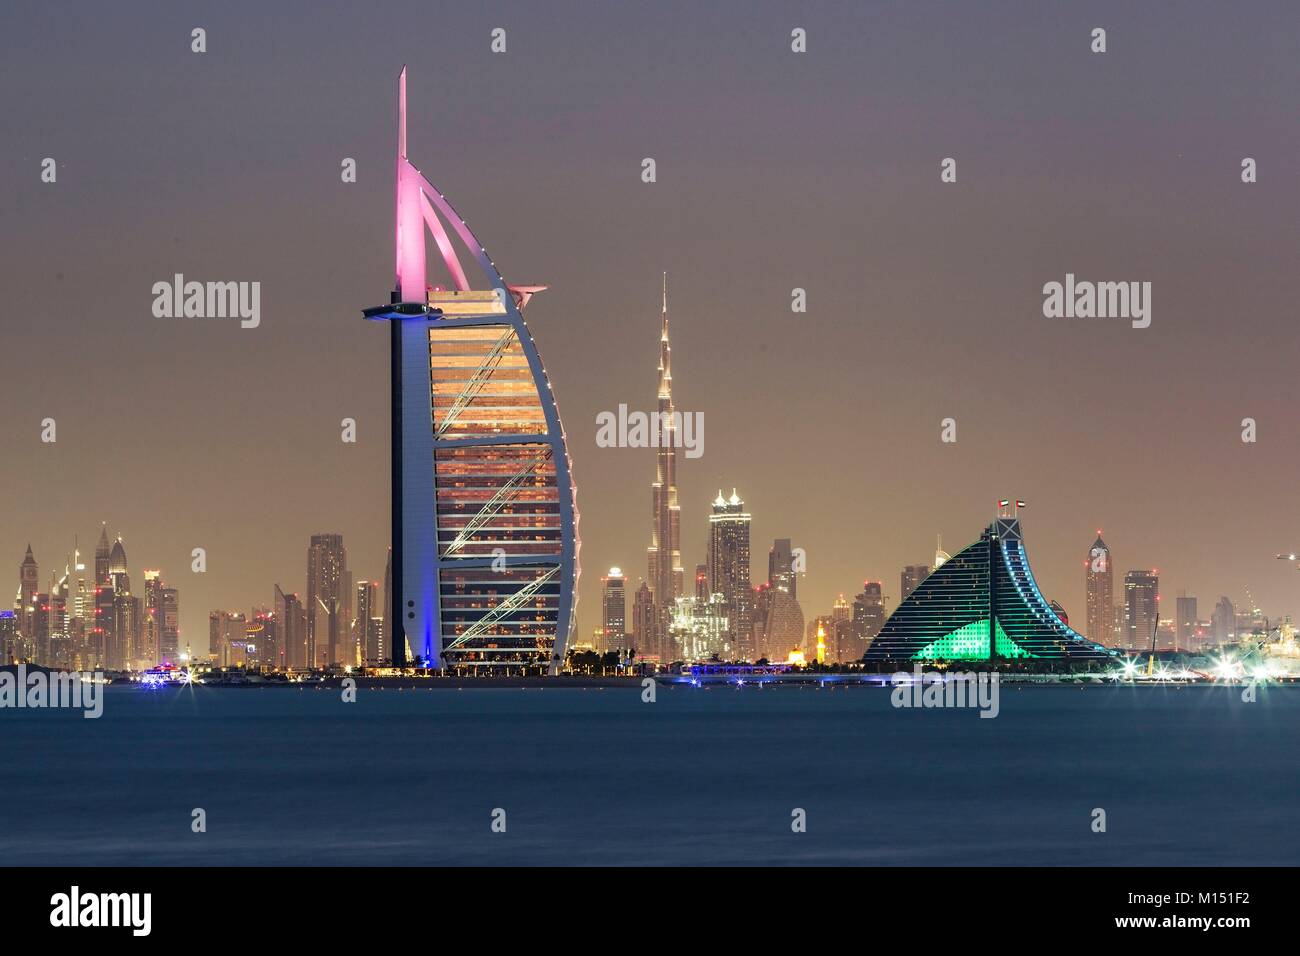 Emirats Arabes Unis, Dubaï, Burj Al Arab et de la plage de Jumeirah Hôtel avec le DIFC, Business Bay et le Burj Khalifa à l'arrière-plan Banque D'Images